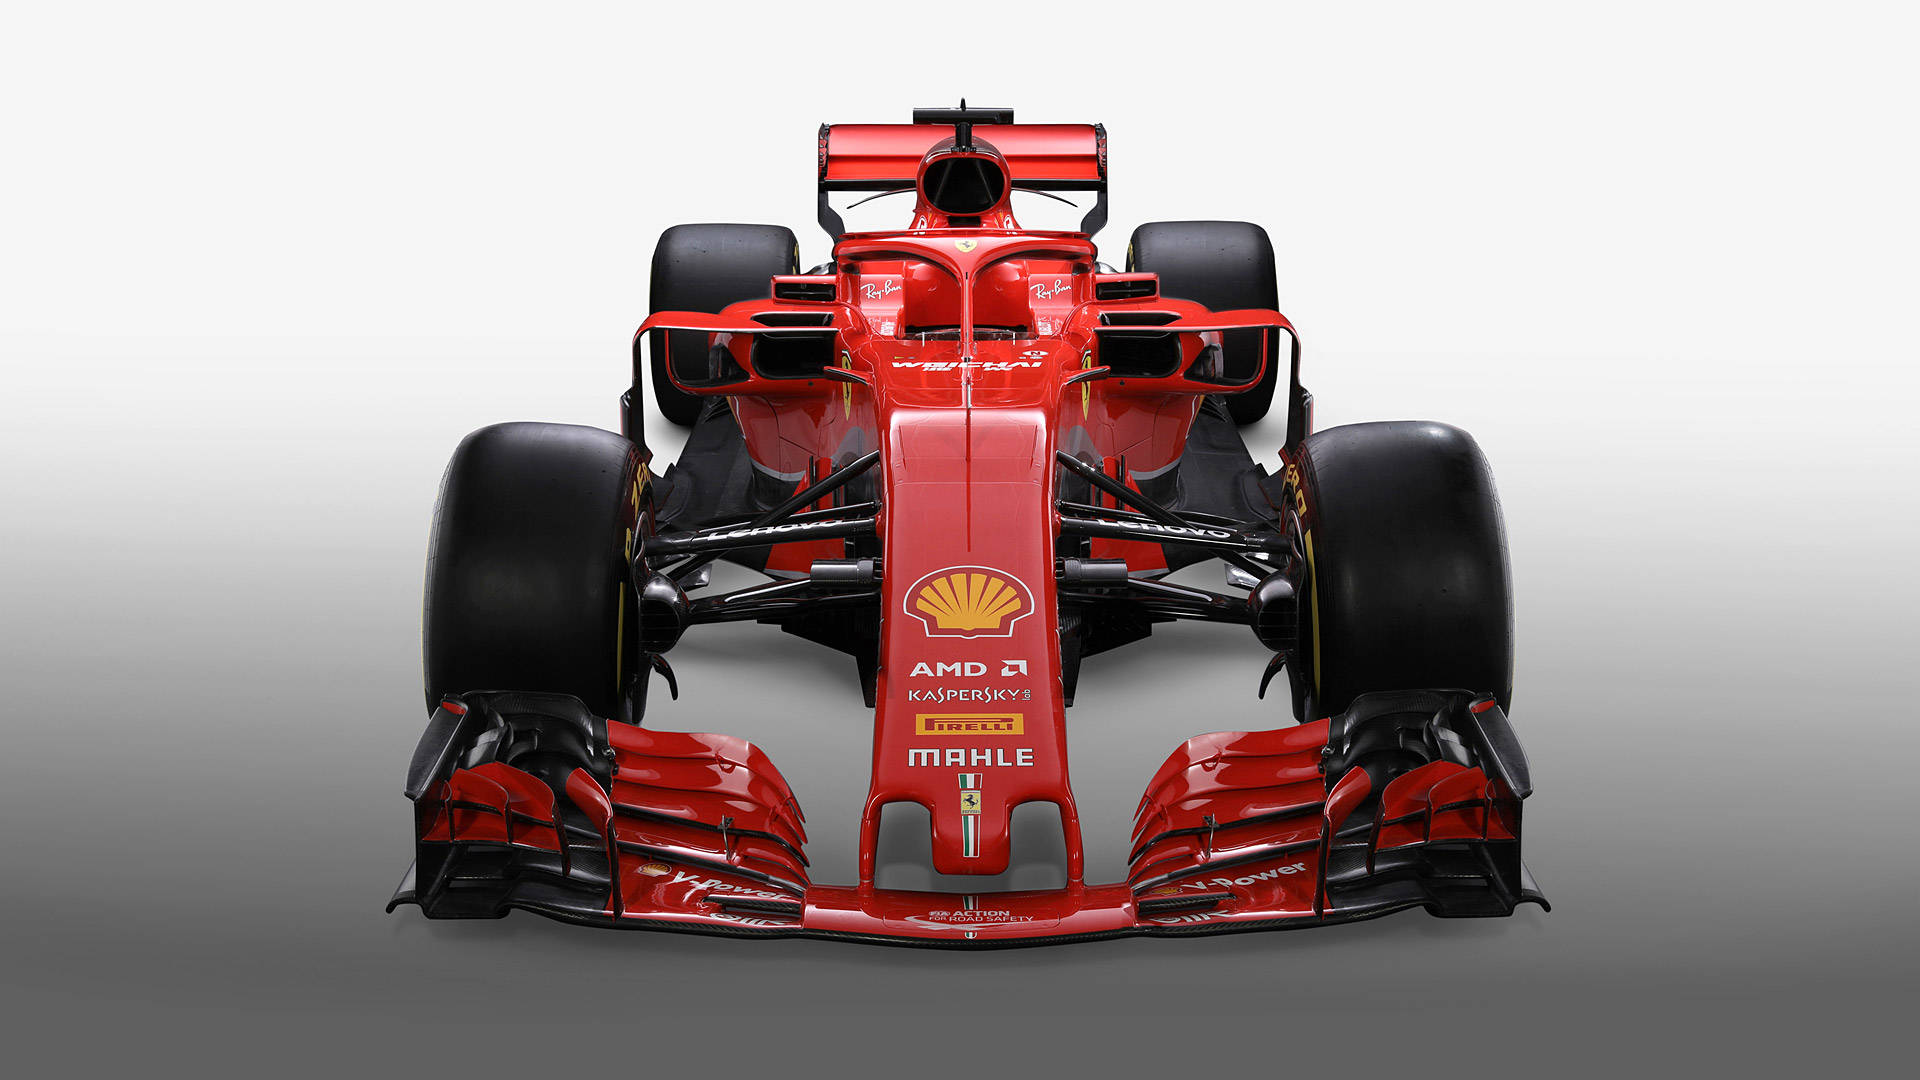 Ferrari F1 2018 Front View Wallpaper